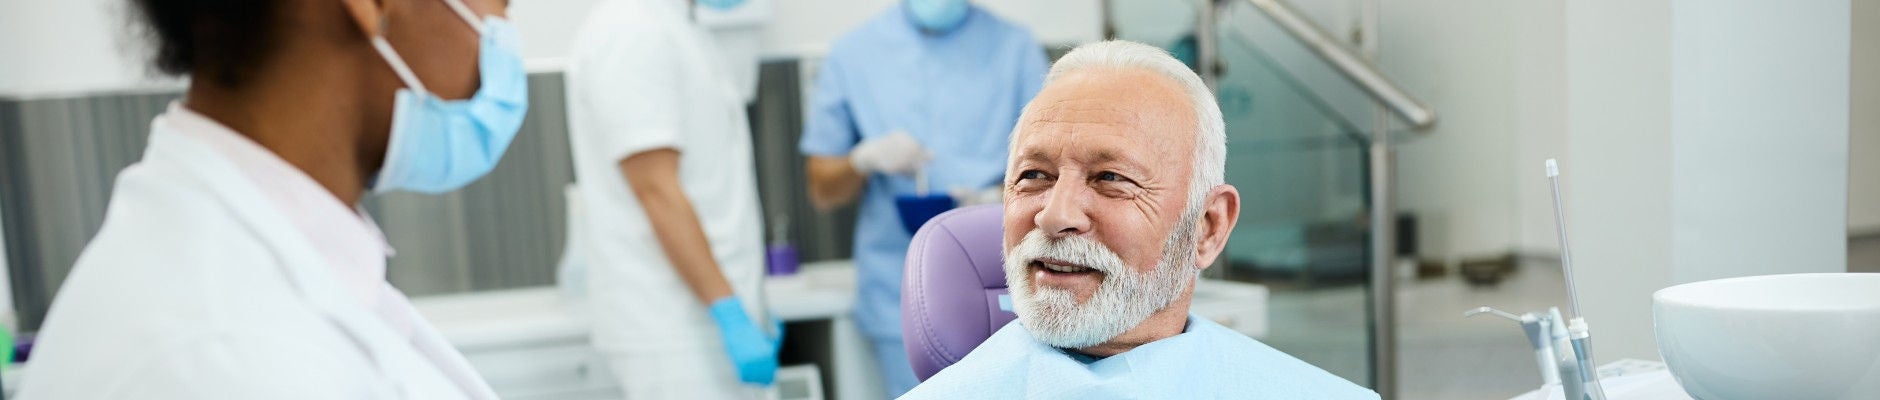 elderly man speaking with dentist